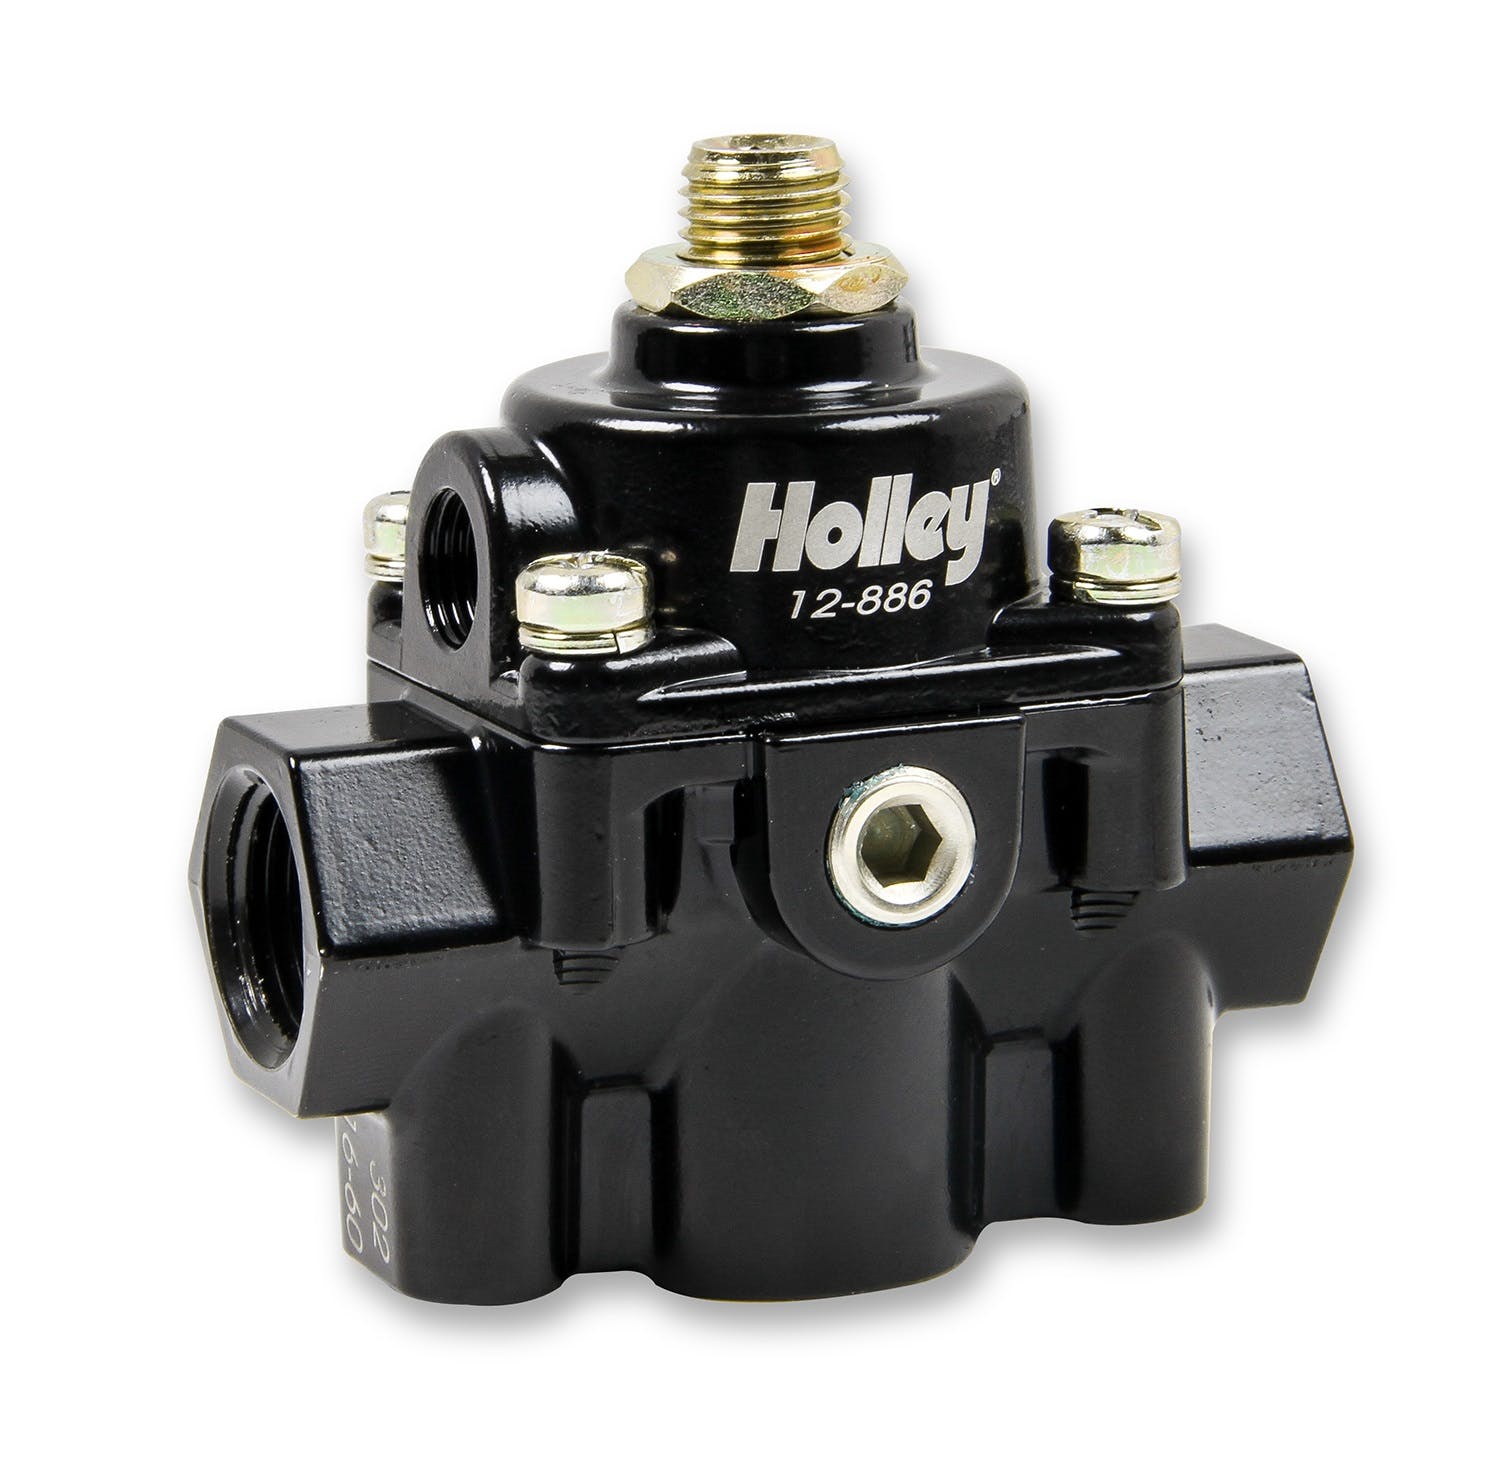 Holley 12-886 Billet Fuel Pressure Regulator 59.5 PSI - Black